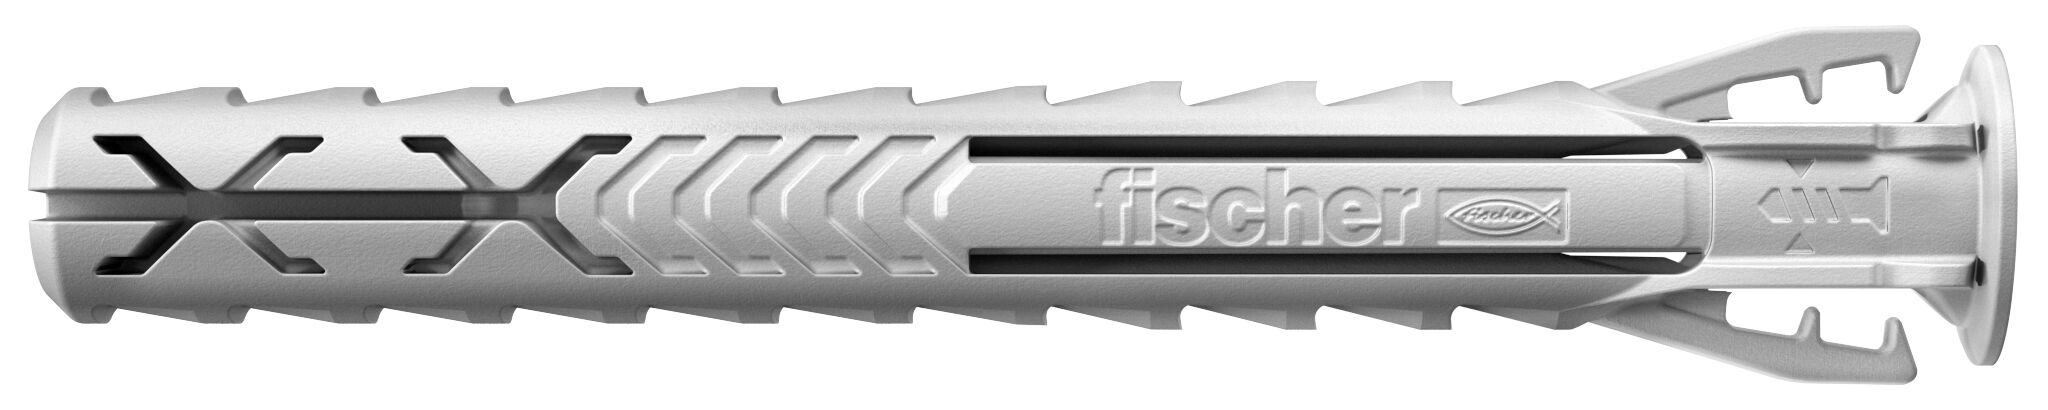 fischer Expansion plug SX Plus 10 x 80